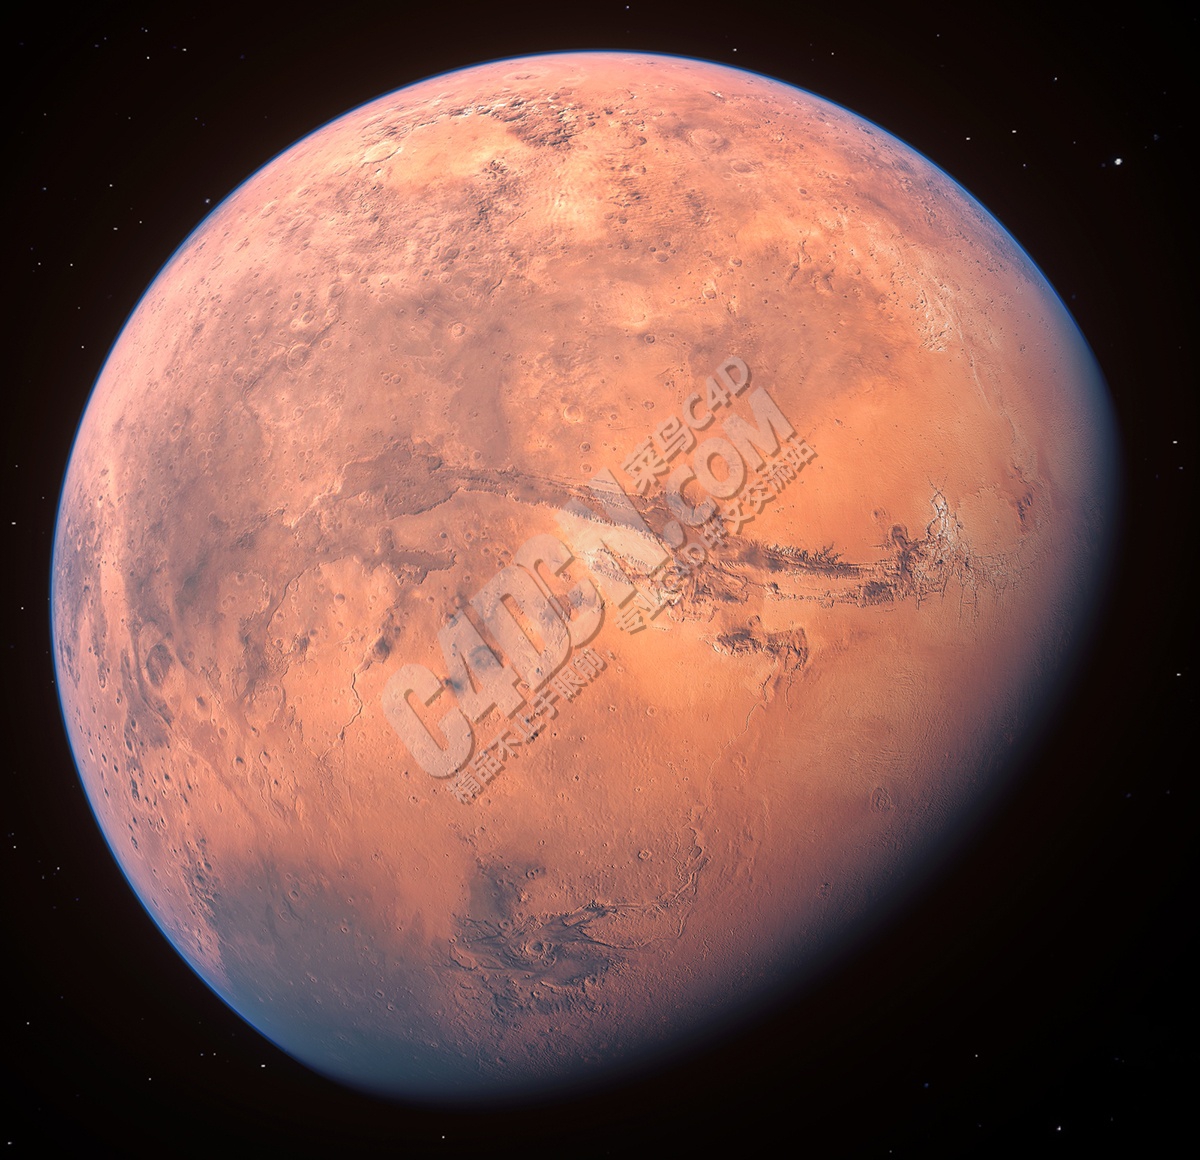 [14-01-21] - Mars.jpg